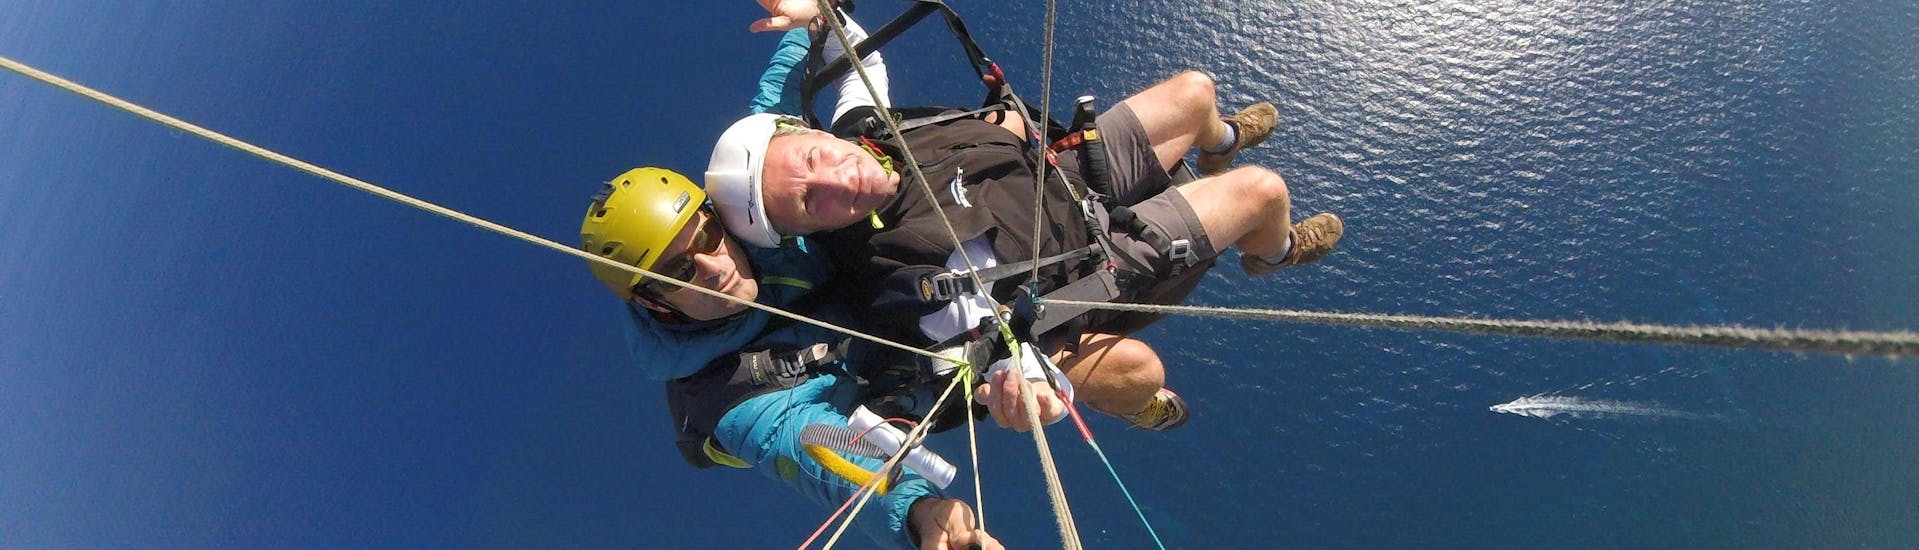 Un pilote de parapente de Saint Leu Parapente effectue un vol tandem parapente - Performance 55min au-dessus de la Baie de Saint Leu à La Réunion.